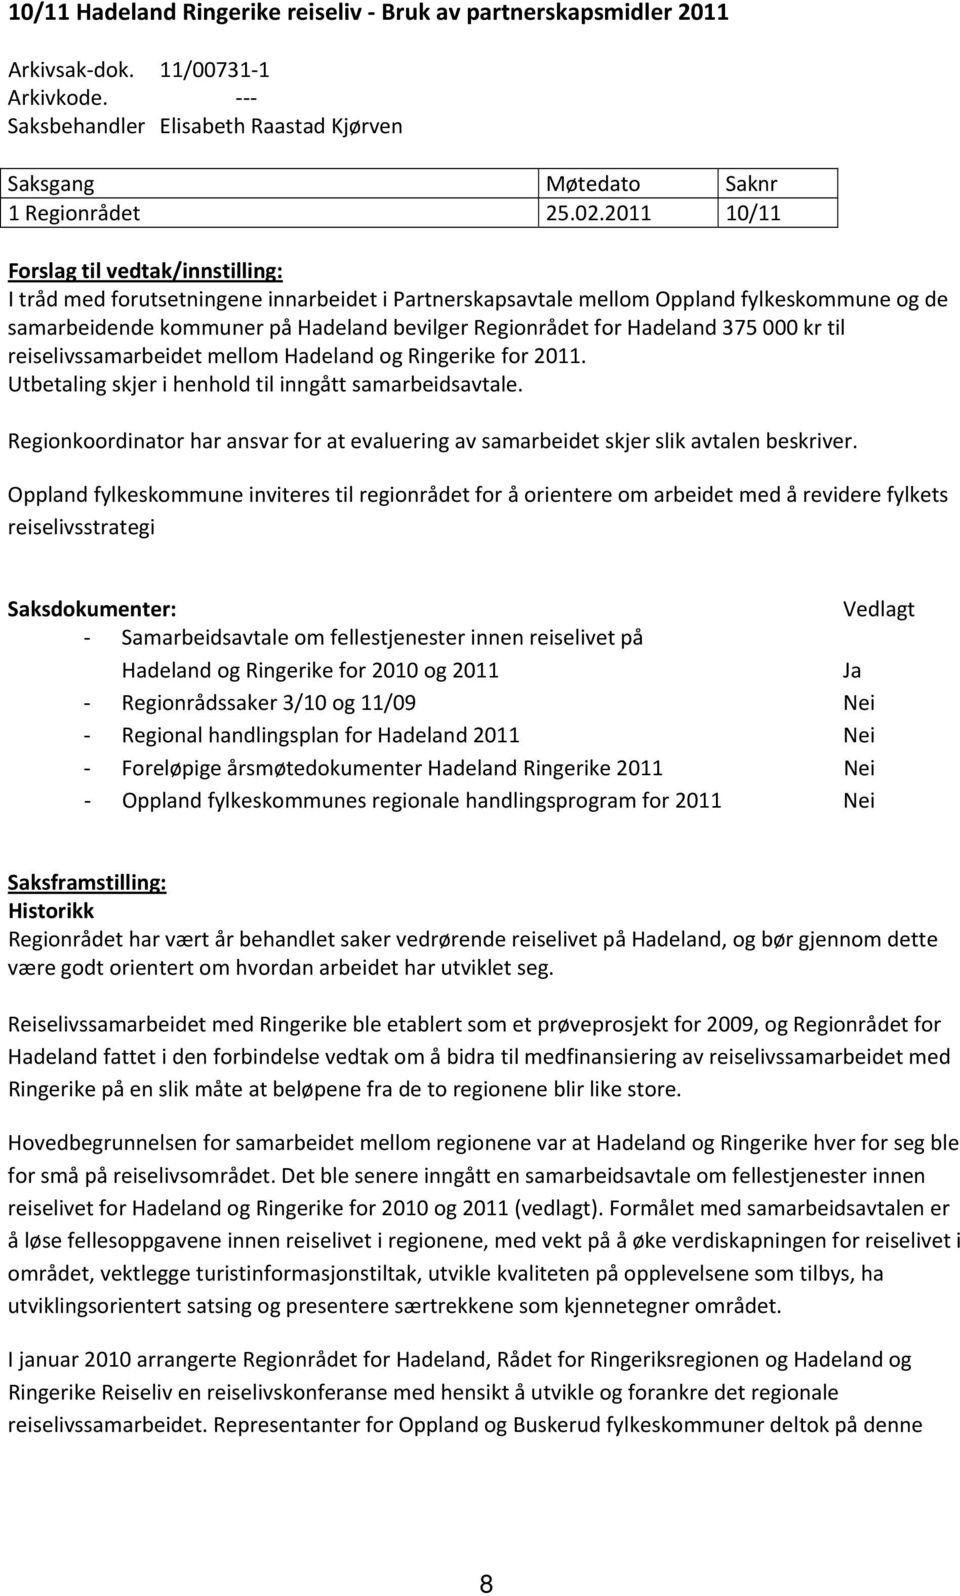 Hadeland 375 000 kr til reiselivssamarbeidet mellom Hadeland og Ringerike for 2011. Utbetaling skjer i henhold til inngått samarbeidsavtale.